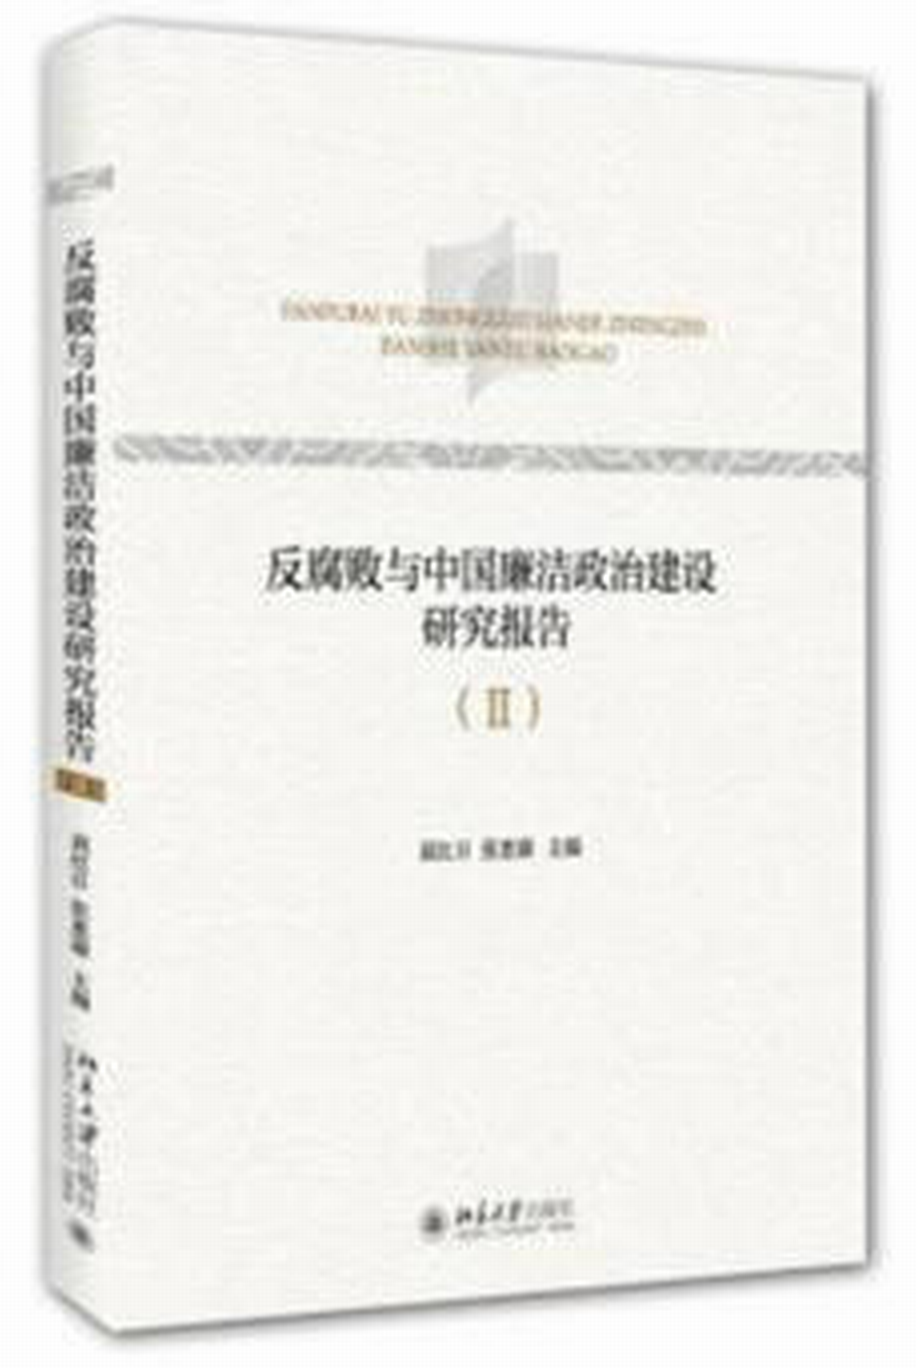 反腐敗與中國廉潔政治建設研究報告(Ⅱ)